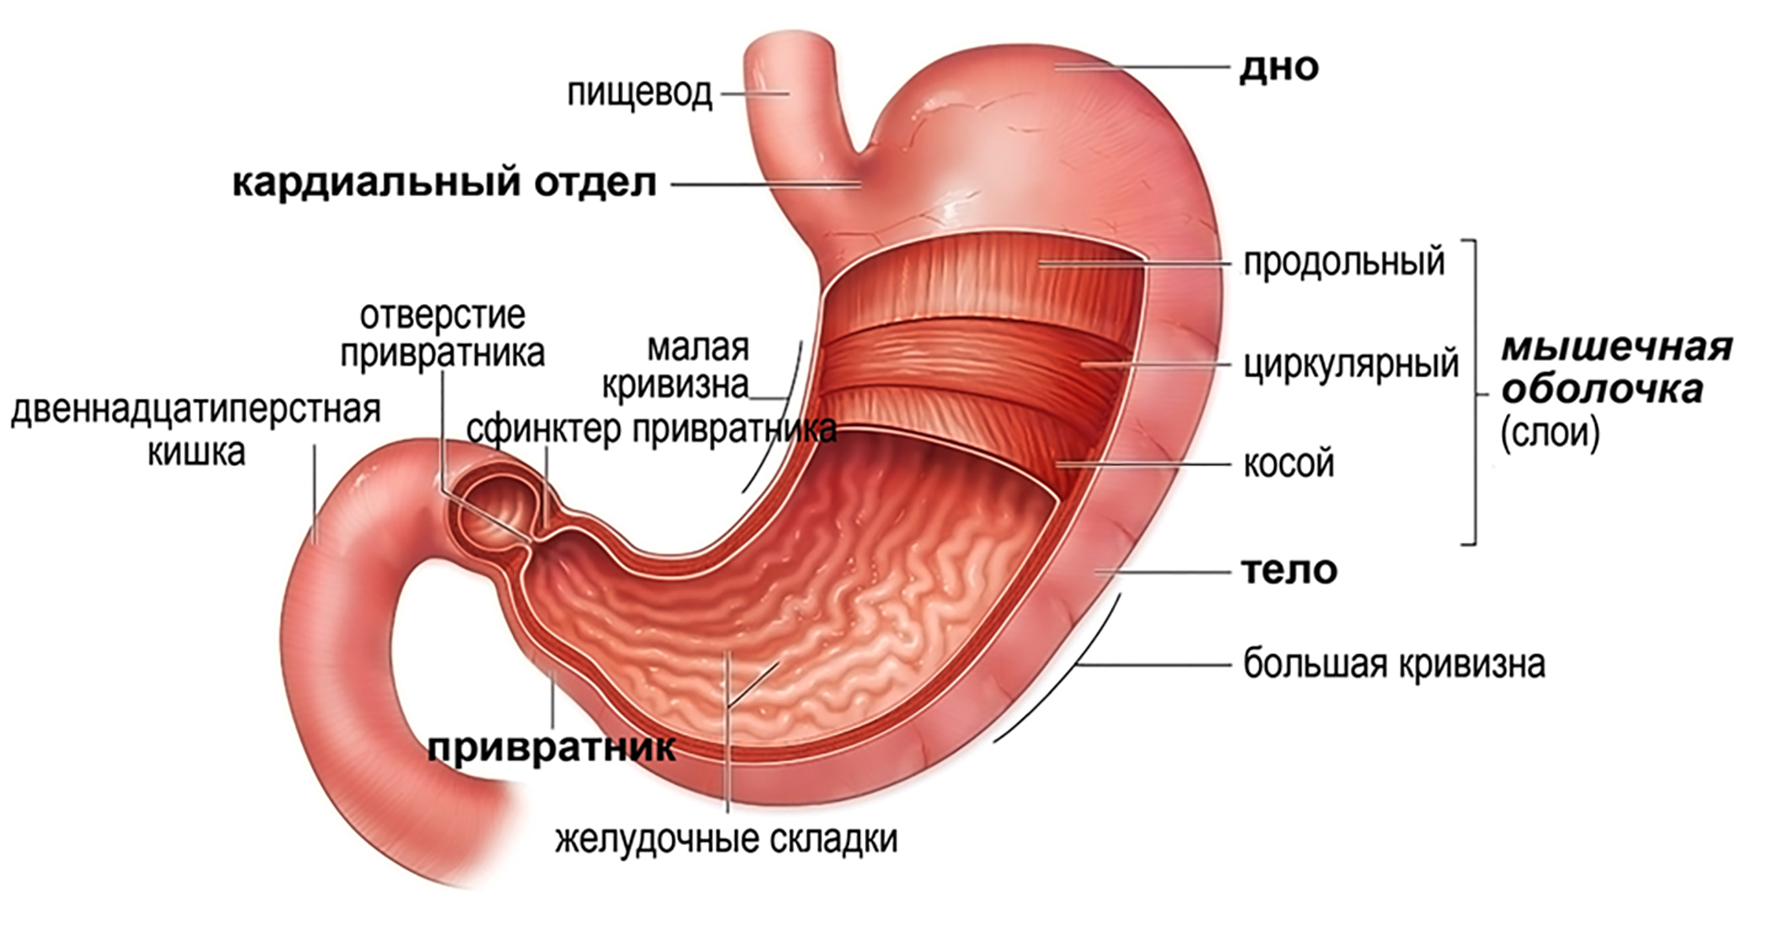 Покажи картинки желудка. Желудок строение и функции анатомия. Внешнее и внутреннее строение желудка. Желудок рисунок с подписями. Желудок схема.